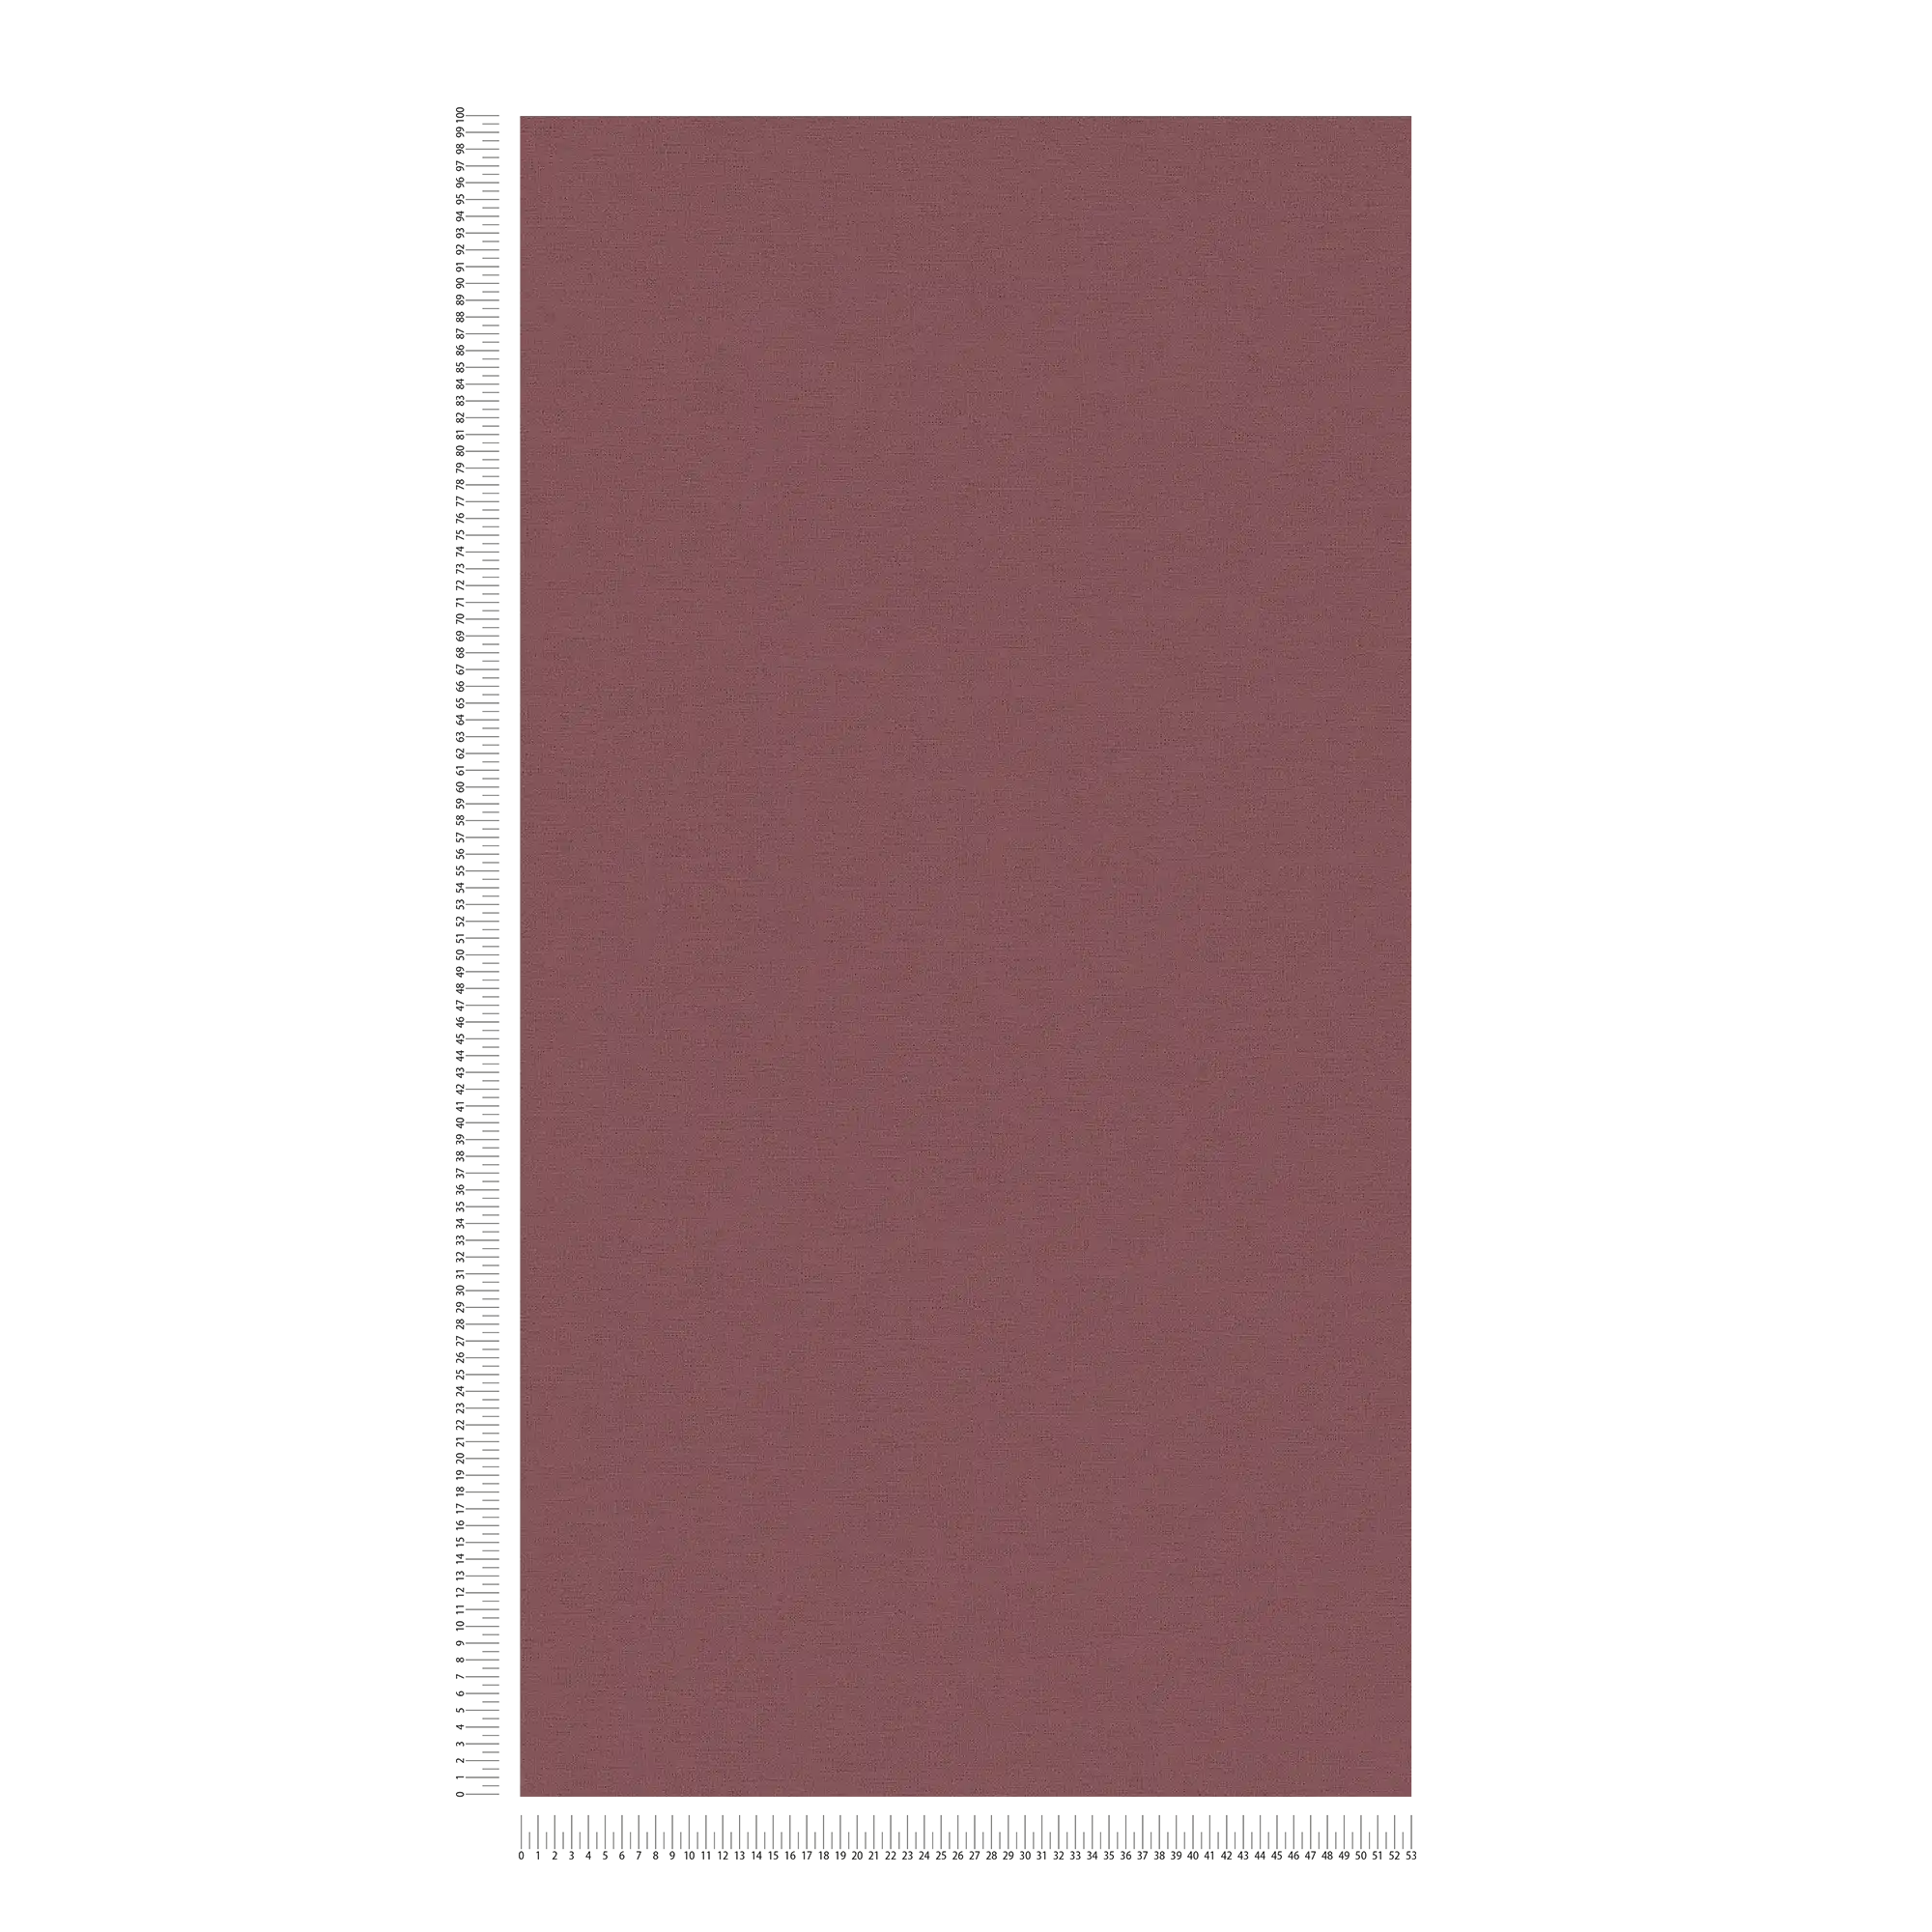             Papel pintado liso rojo burdeos con óptica textil
        